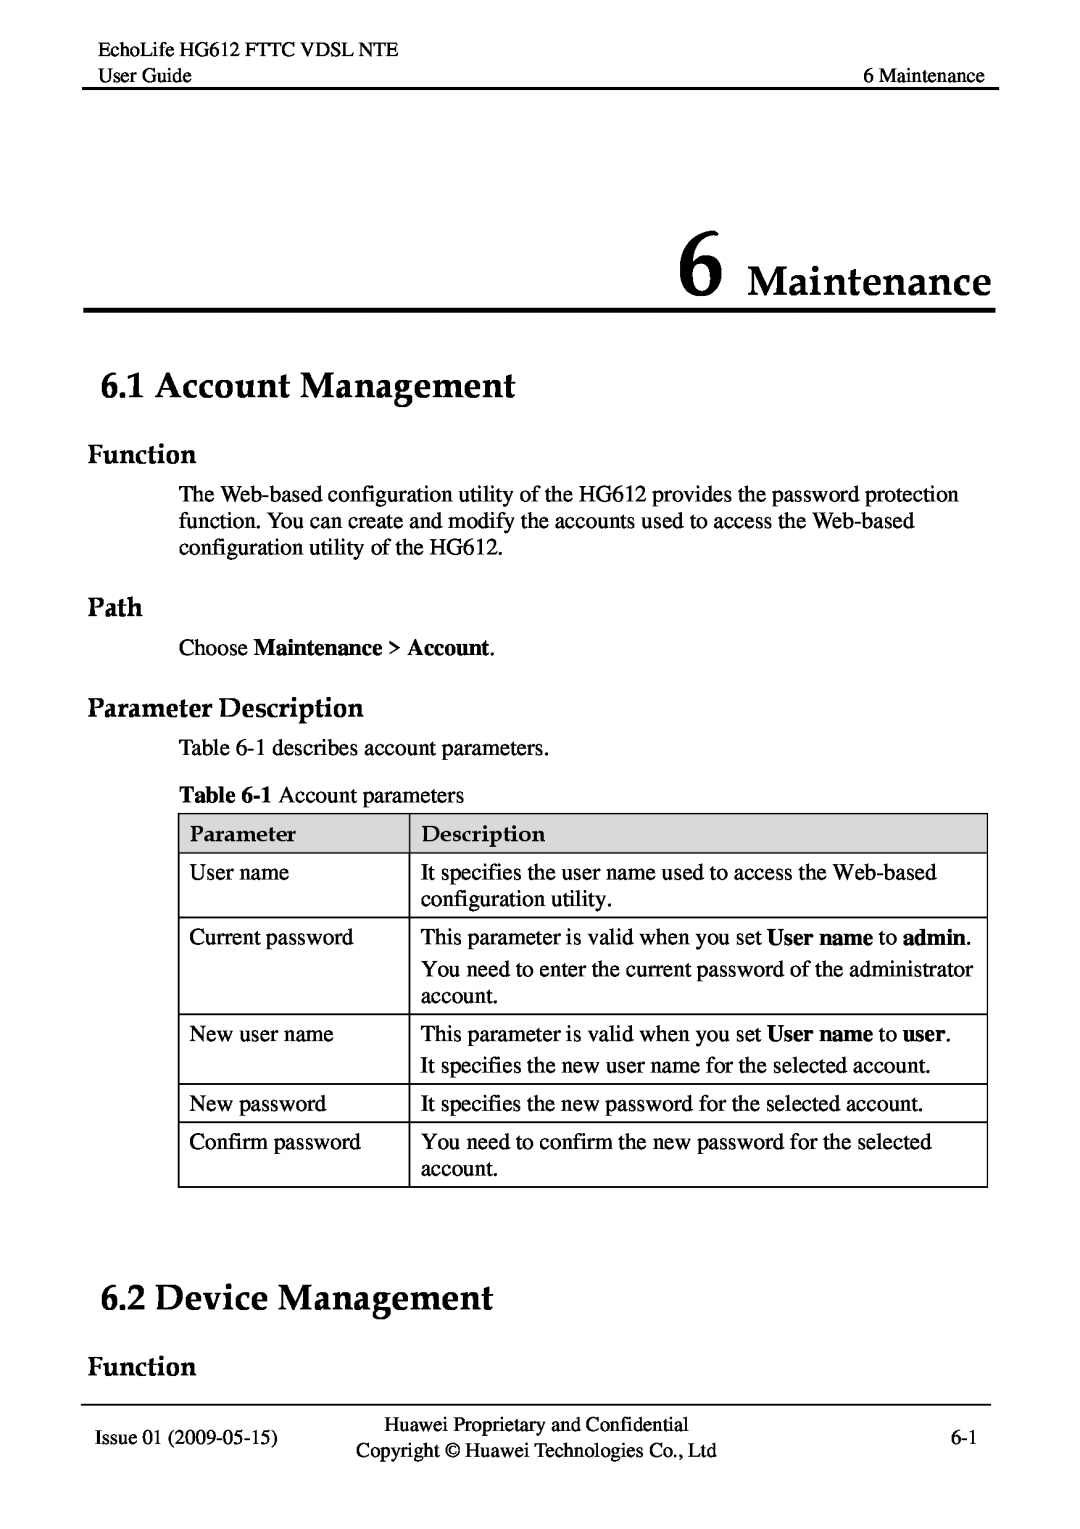 Huawei HG612FTTC VDSL NTE manual Maintenance, Account Management, Device Management, Function, Path, Parameter Description 